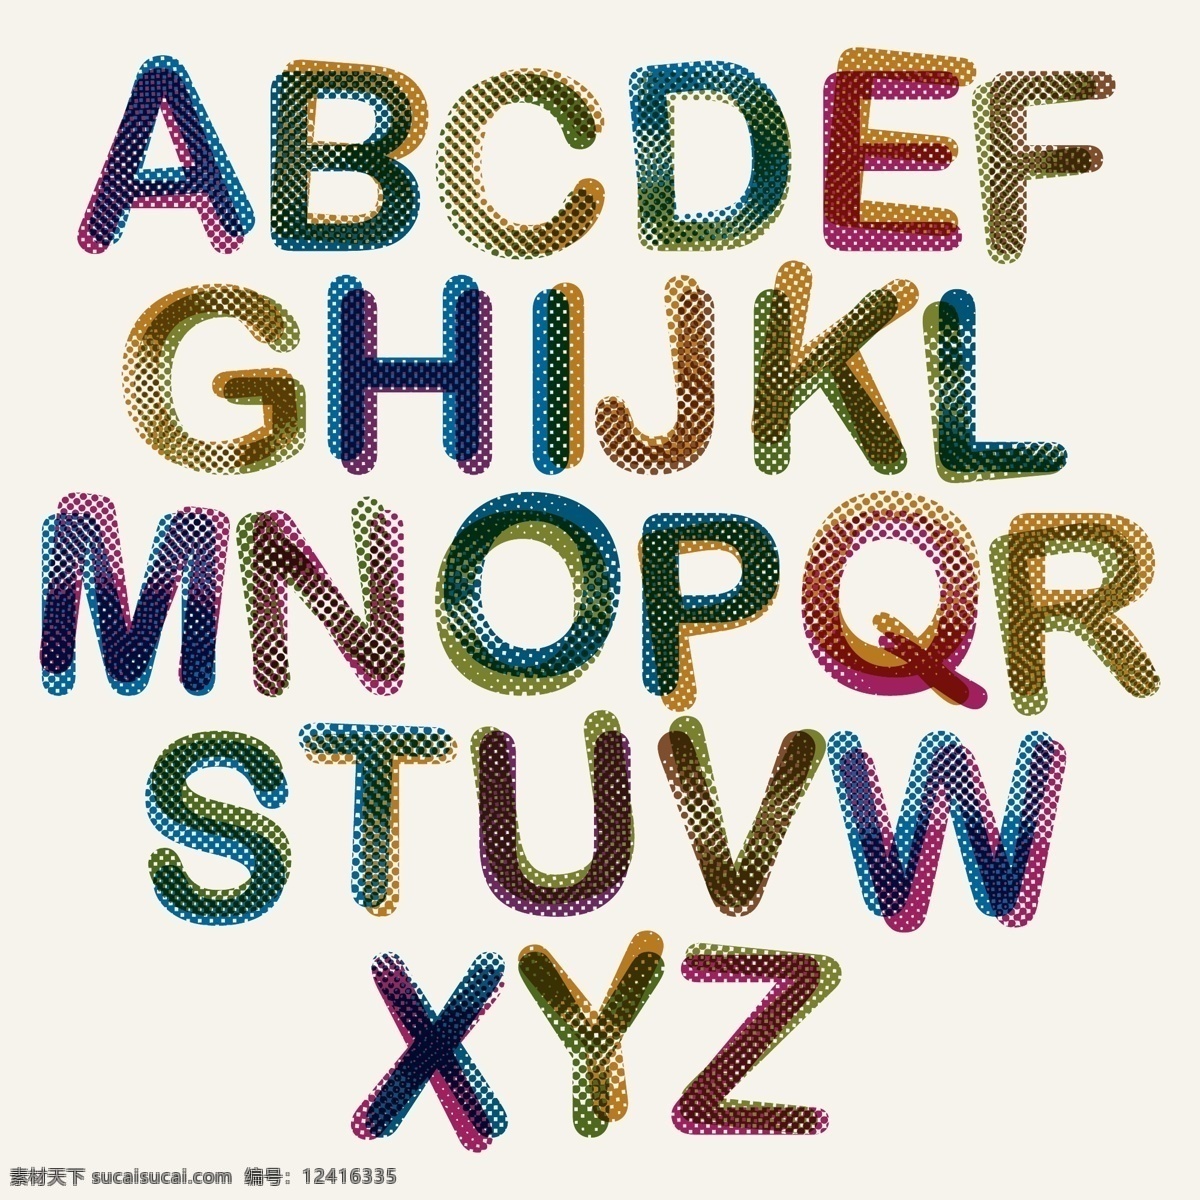 网点字母 矢量字母 卡通字母 手绘字母 字母插画 字母设计 创意字母 艺术字母 重影字母 叠影字母 彩色渐变字母 圆点 数字字母 标志图标 其他图标